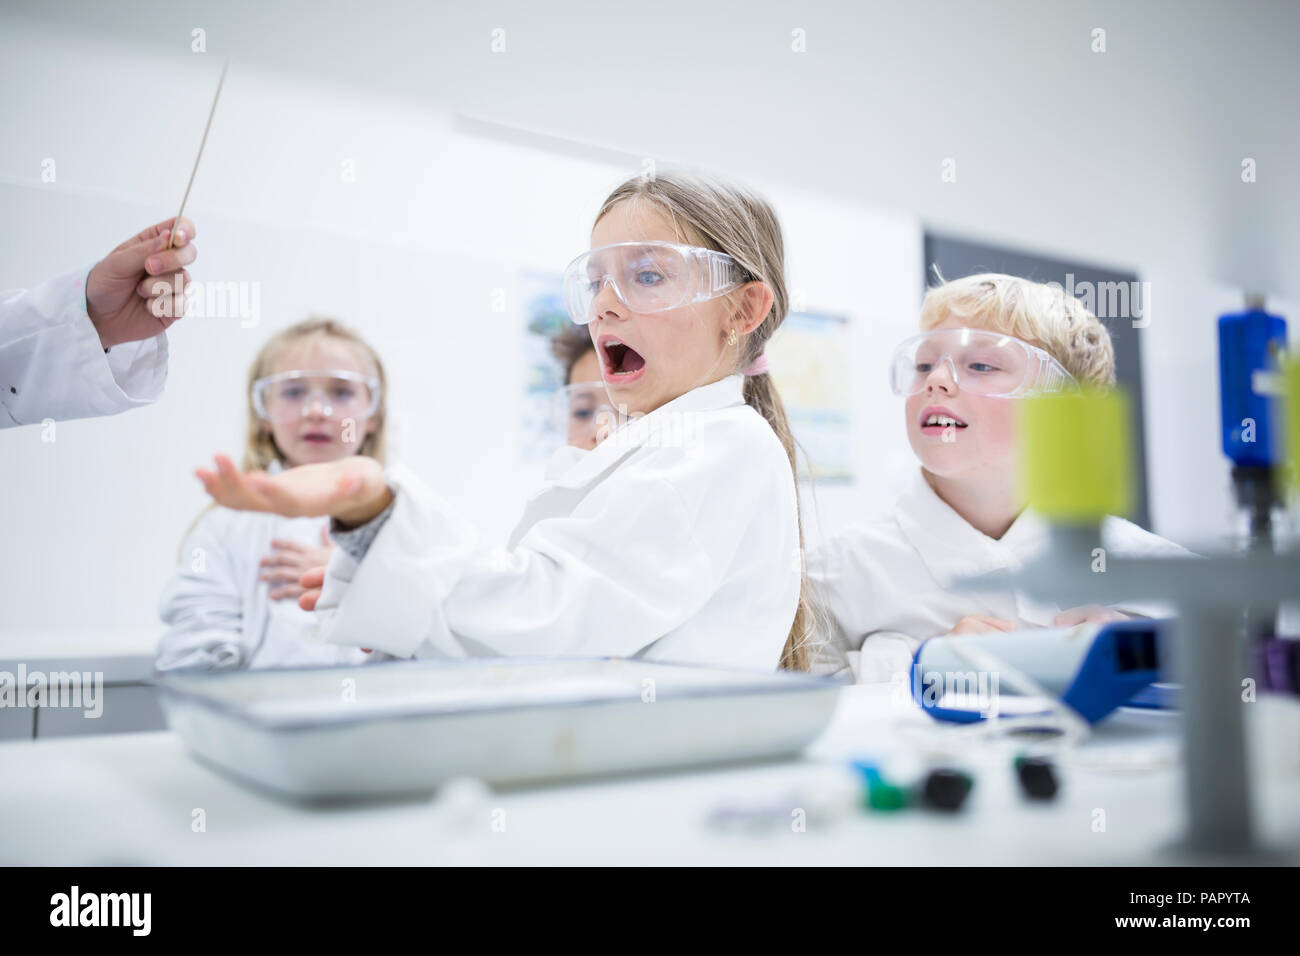 Frightened schoolgirl in science class Stock Photo